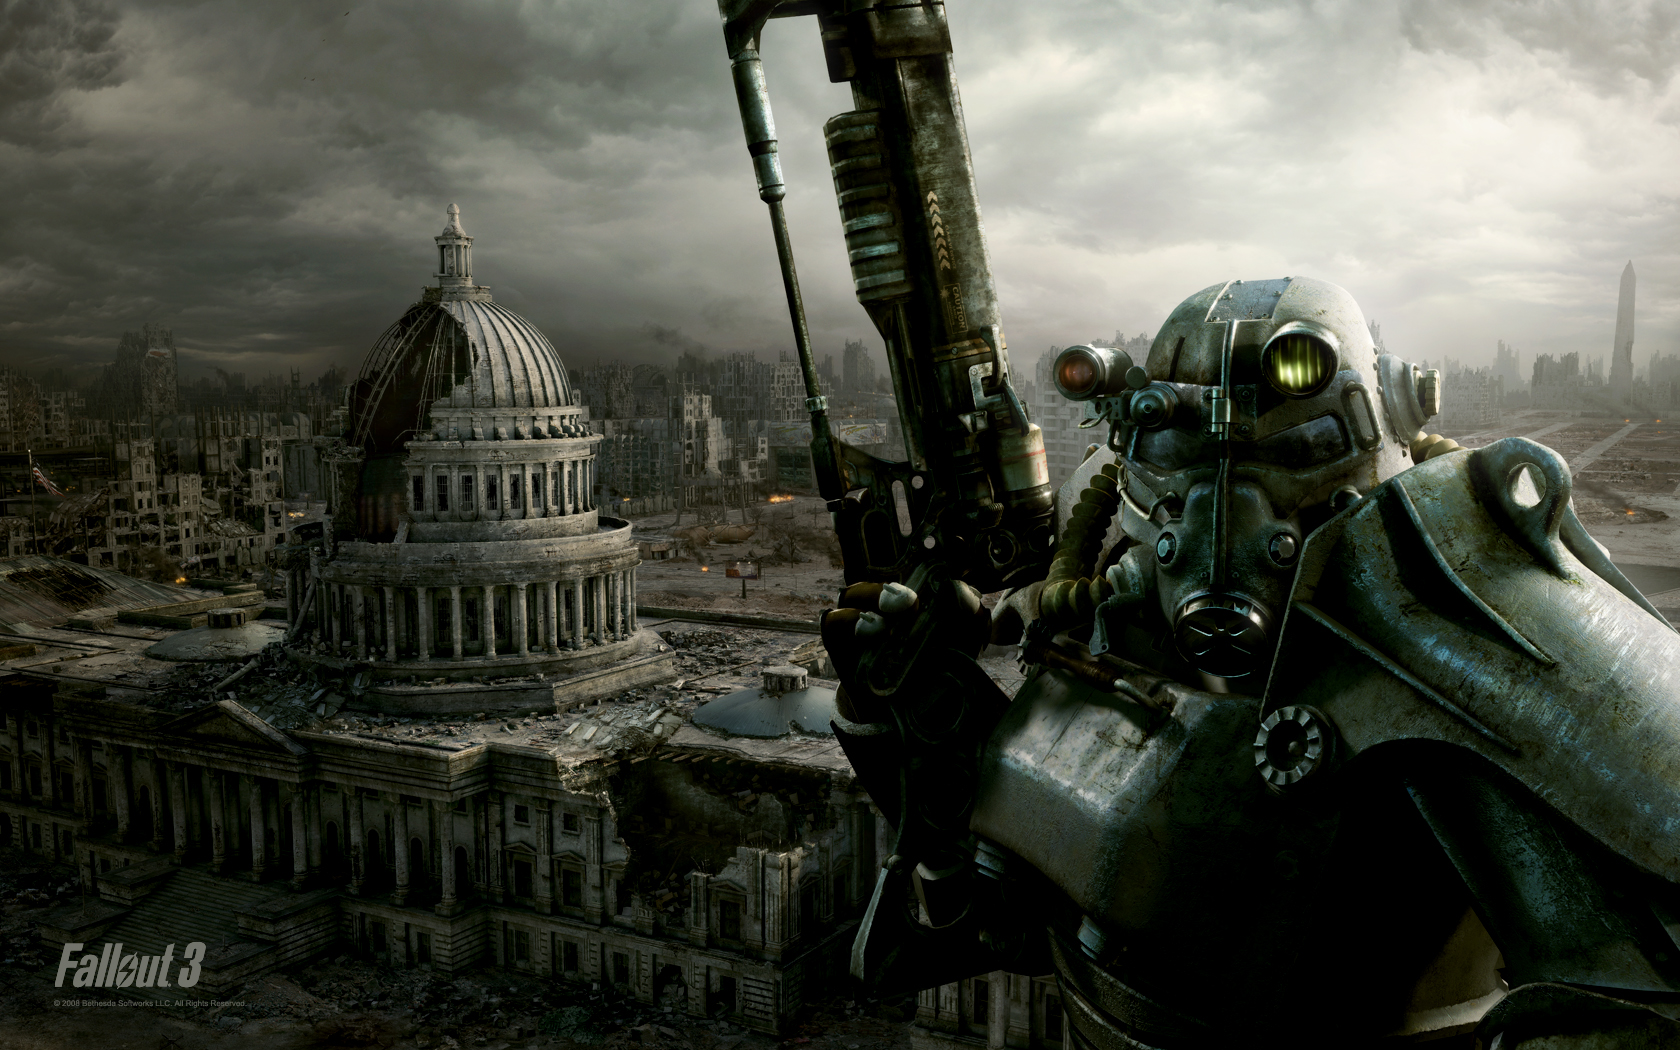 Grafika Fallouta jest piękna w swej brzydocie.